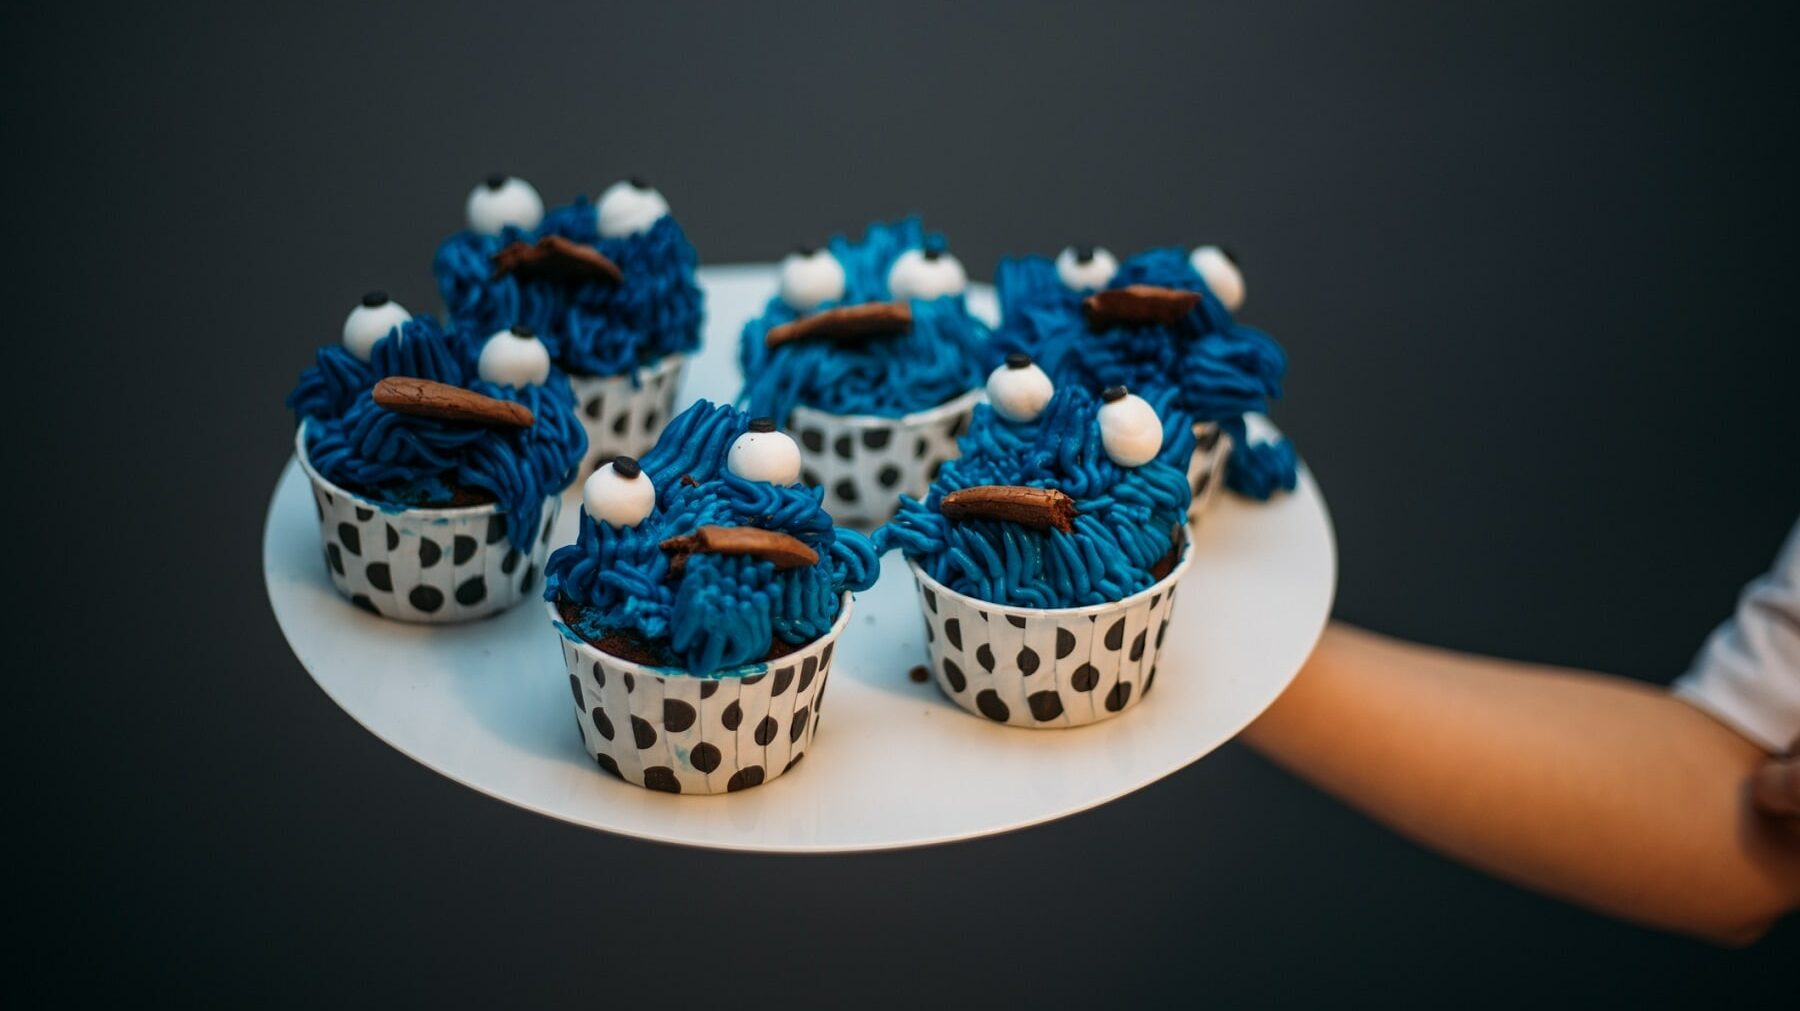 Fünf Krümelmonster-Cupcakes stehen auf einem weißen Teller und werden vor einen schwarzen Hintergrund gehalten. Die Cupcakes stehen in gepunkteten Muffinformen und in jedem Krümelmonster-Cupcake steckt ein Keks.